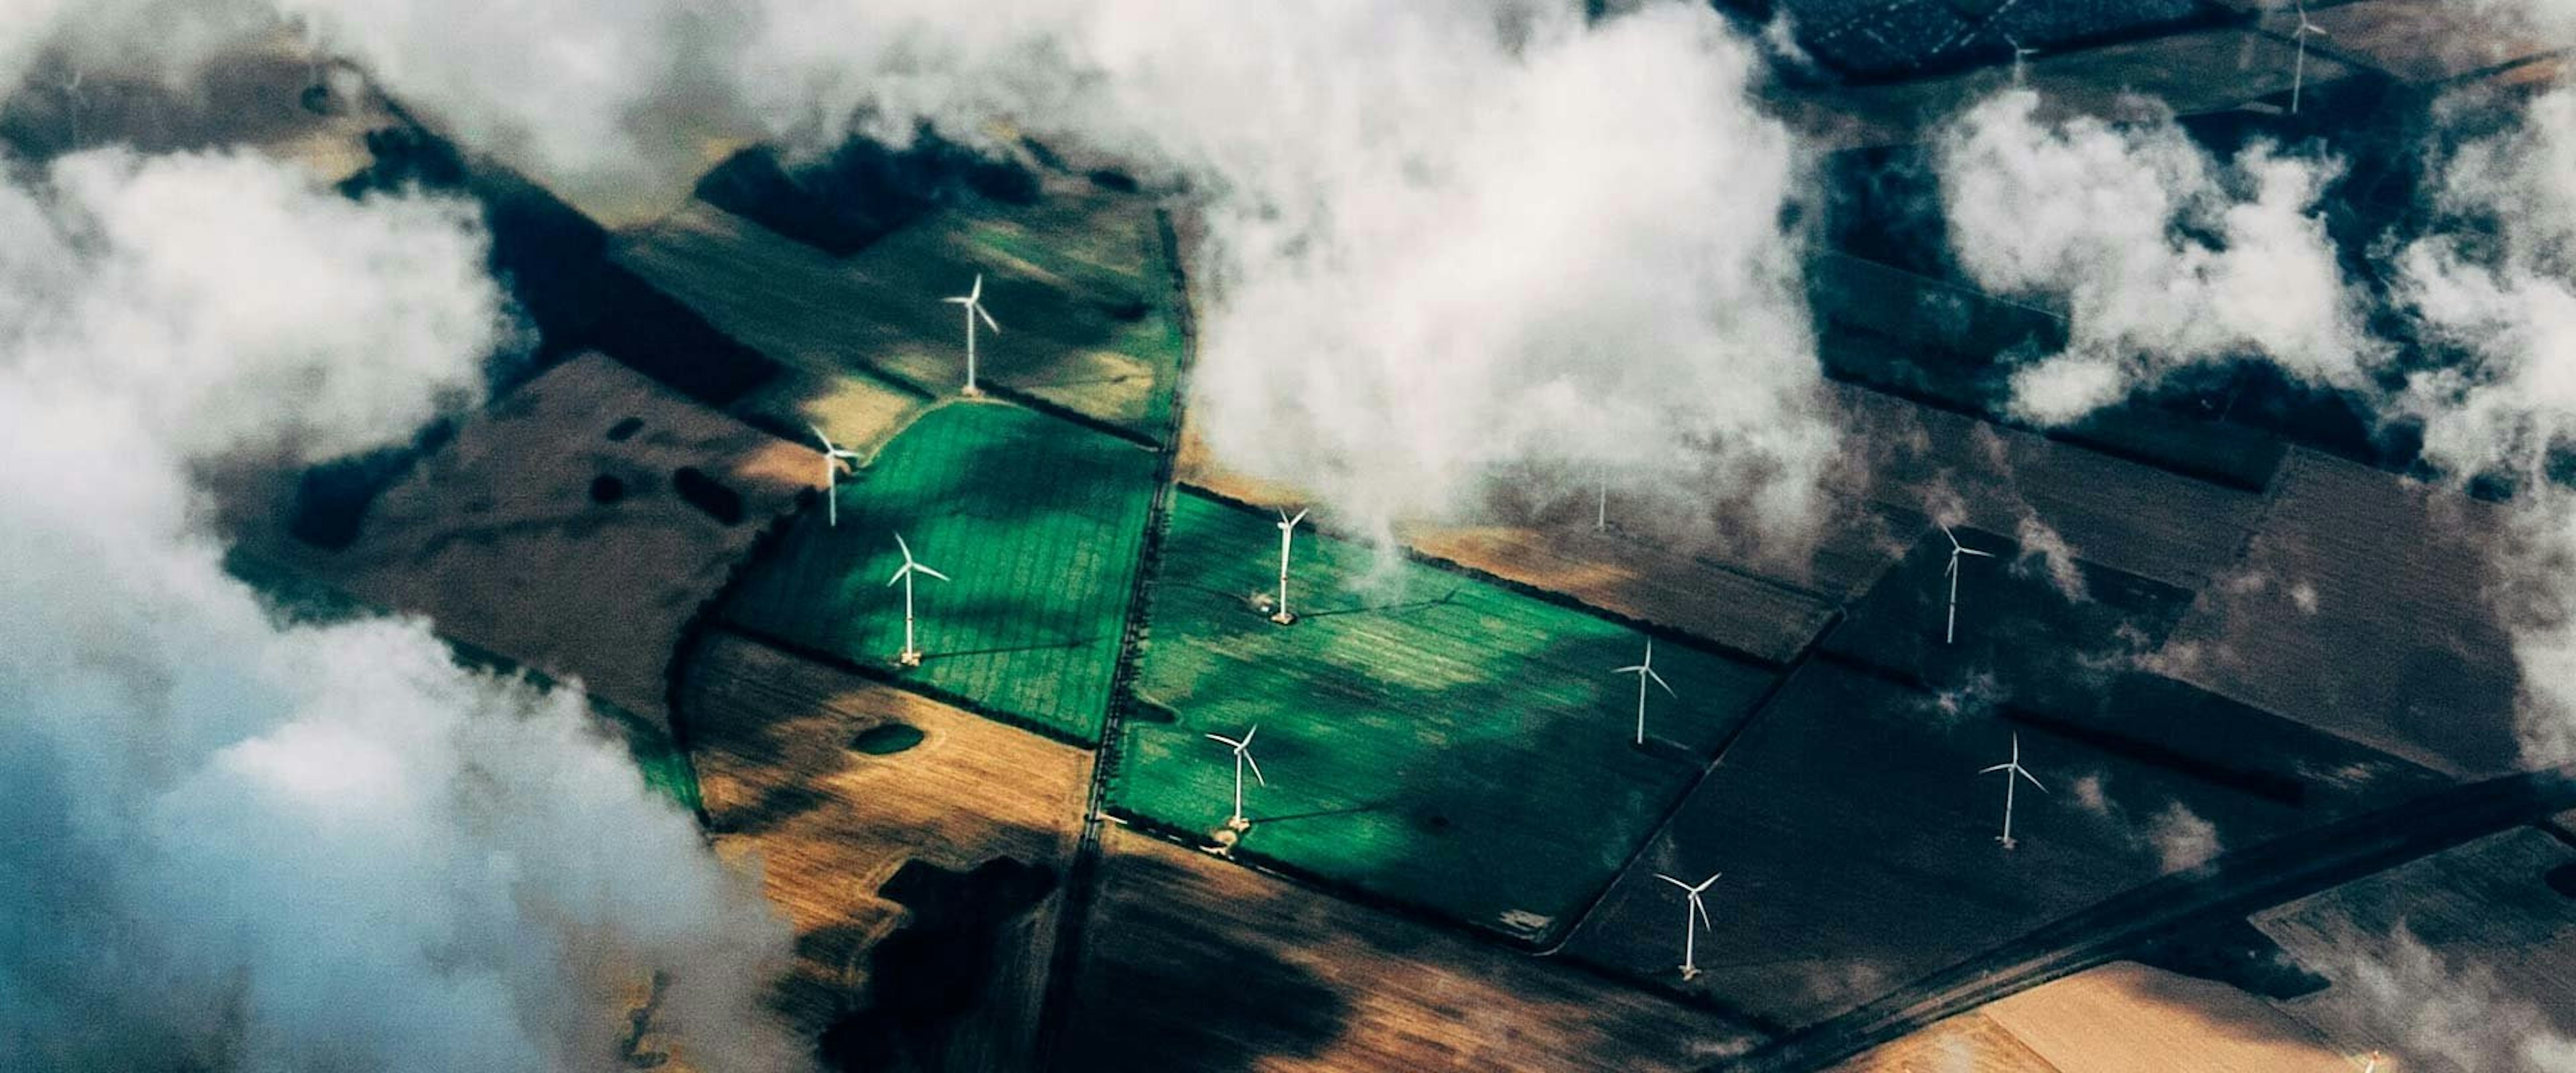 Aerial photo of wind turbines